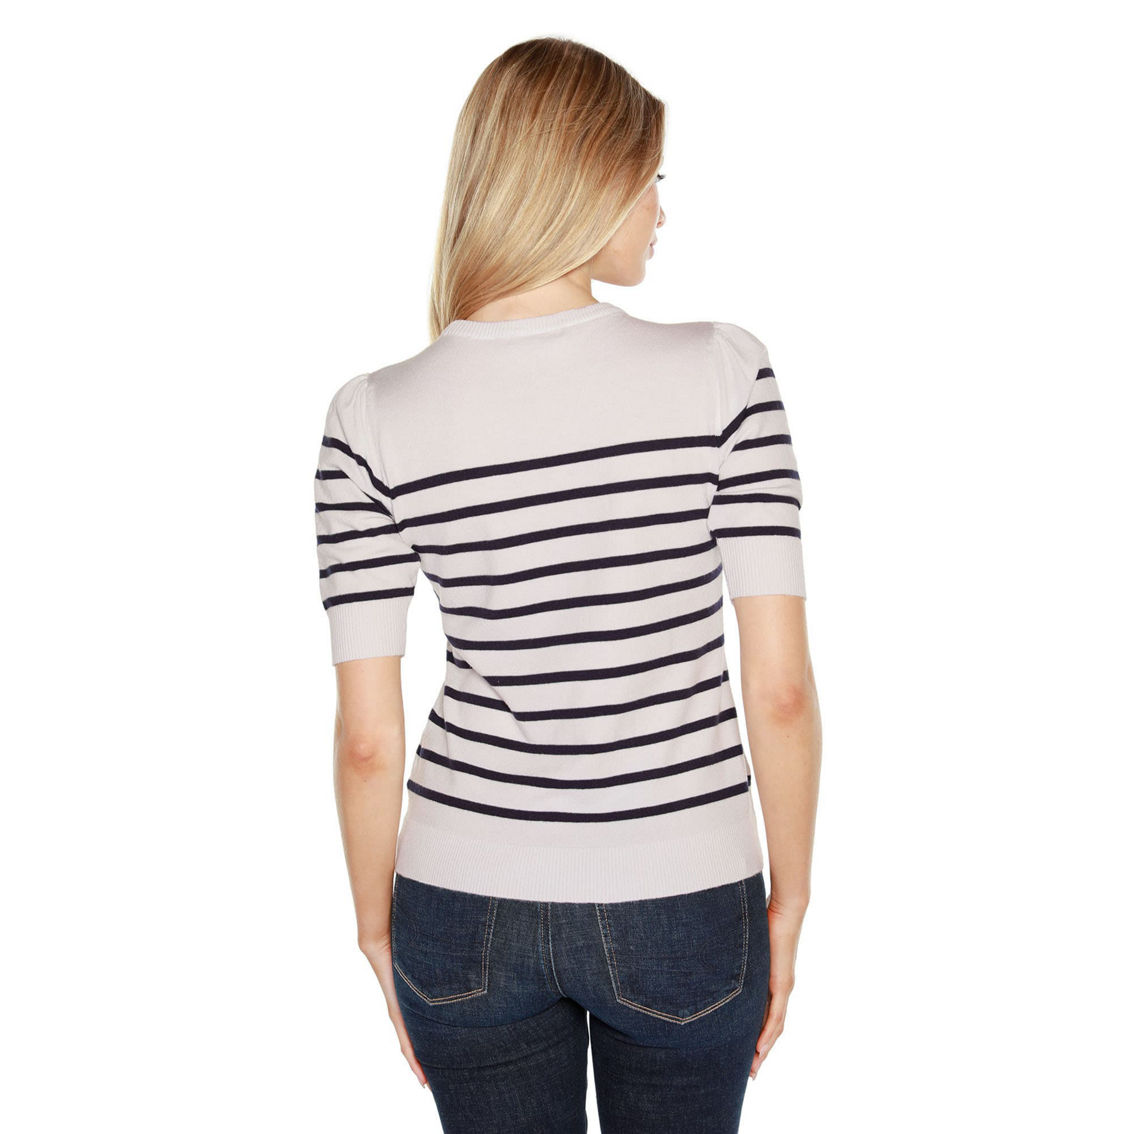 Belldini Breton Stripe Sweater - Image 2 of 4